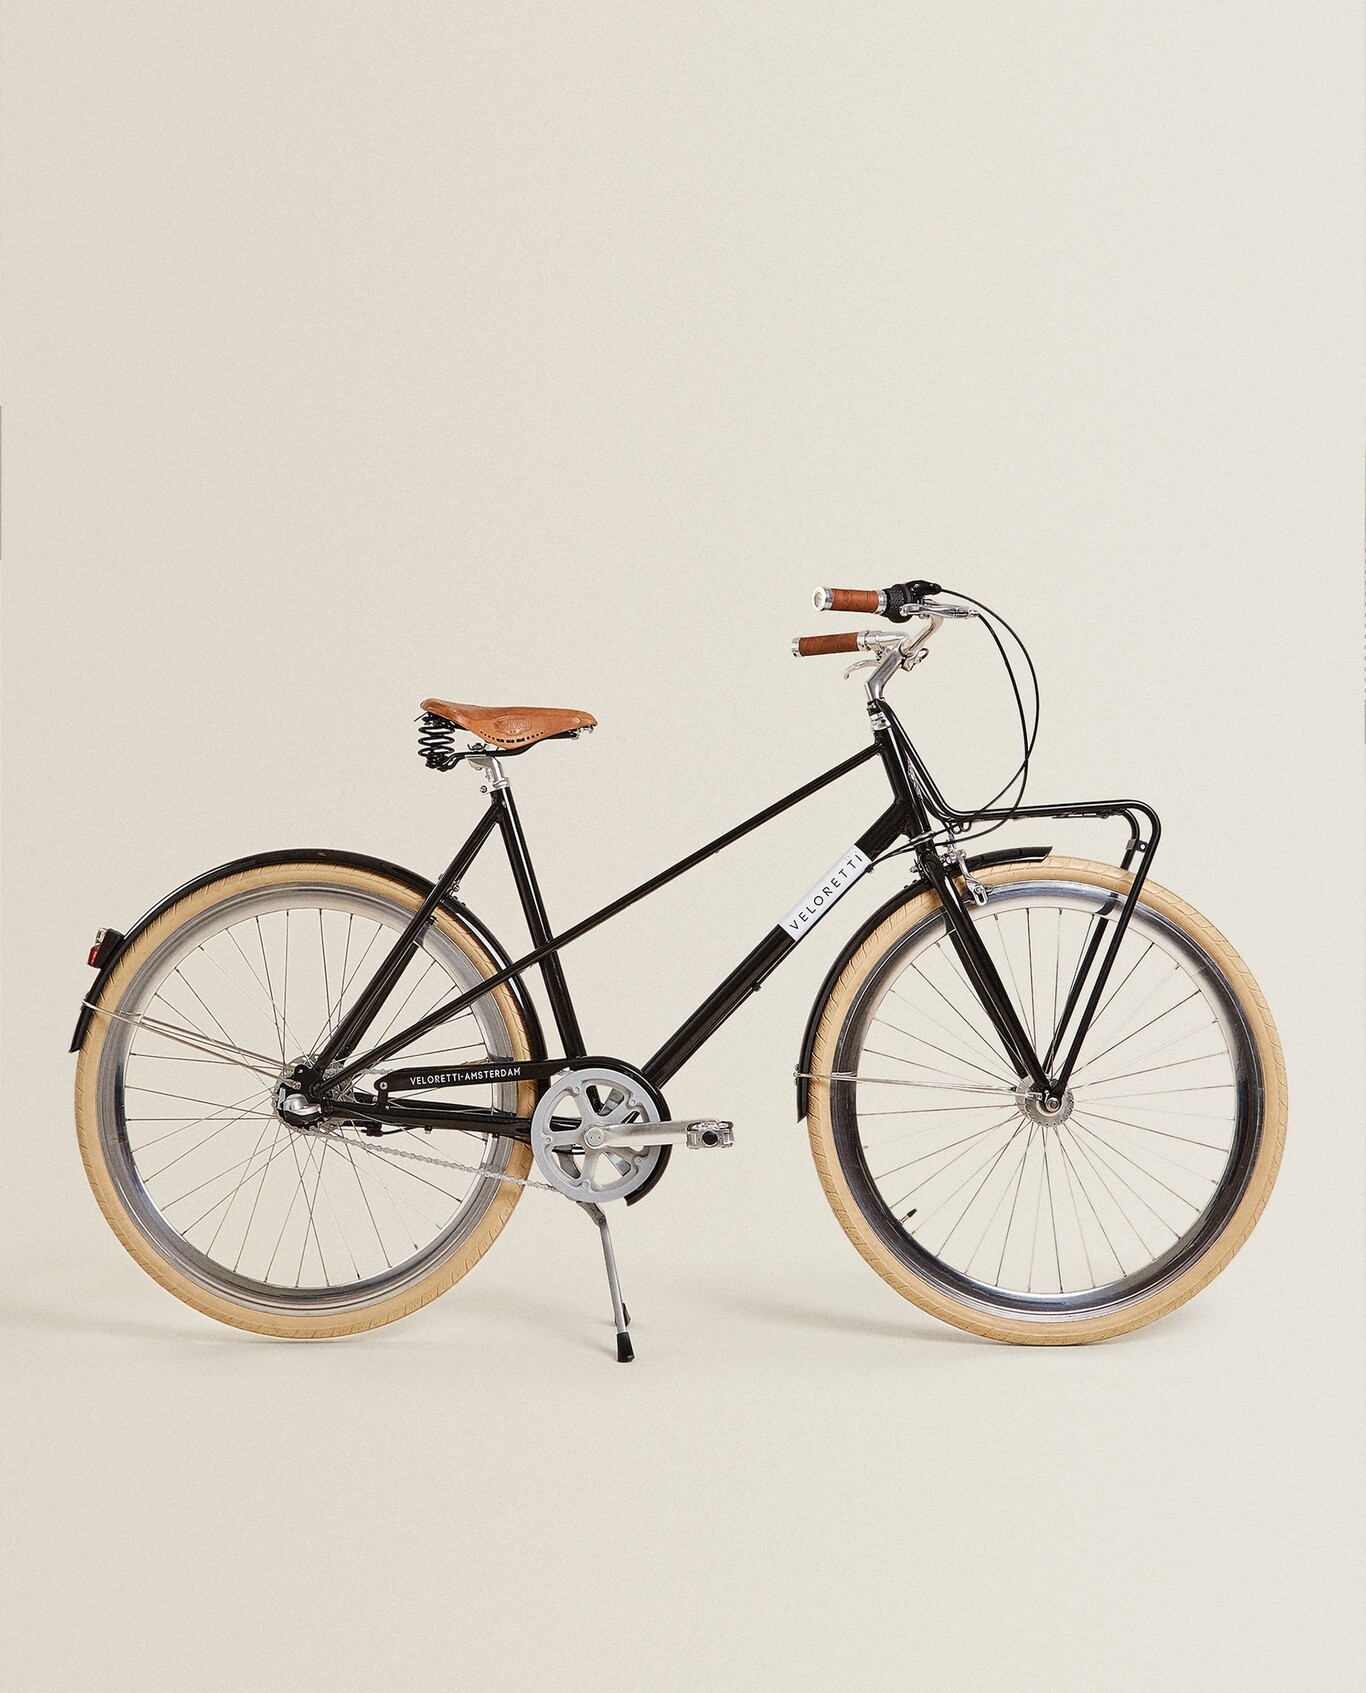 Lo nuevo de Zara Home: las bicicletas con toque retro y nada low cost